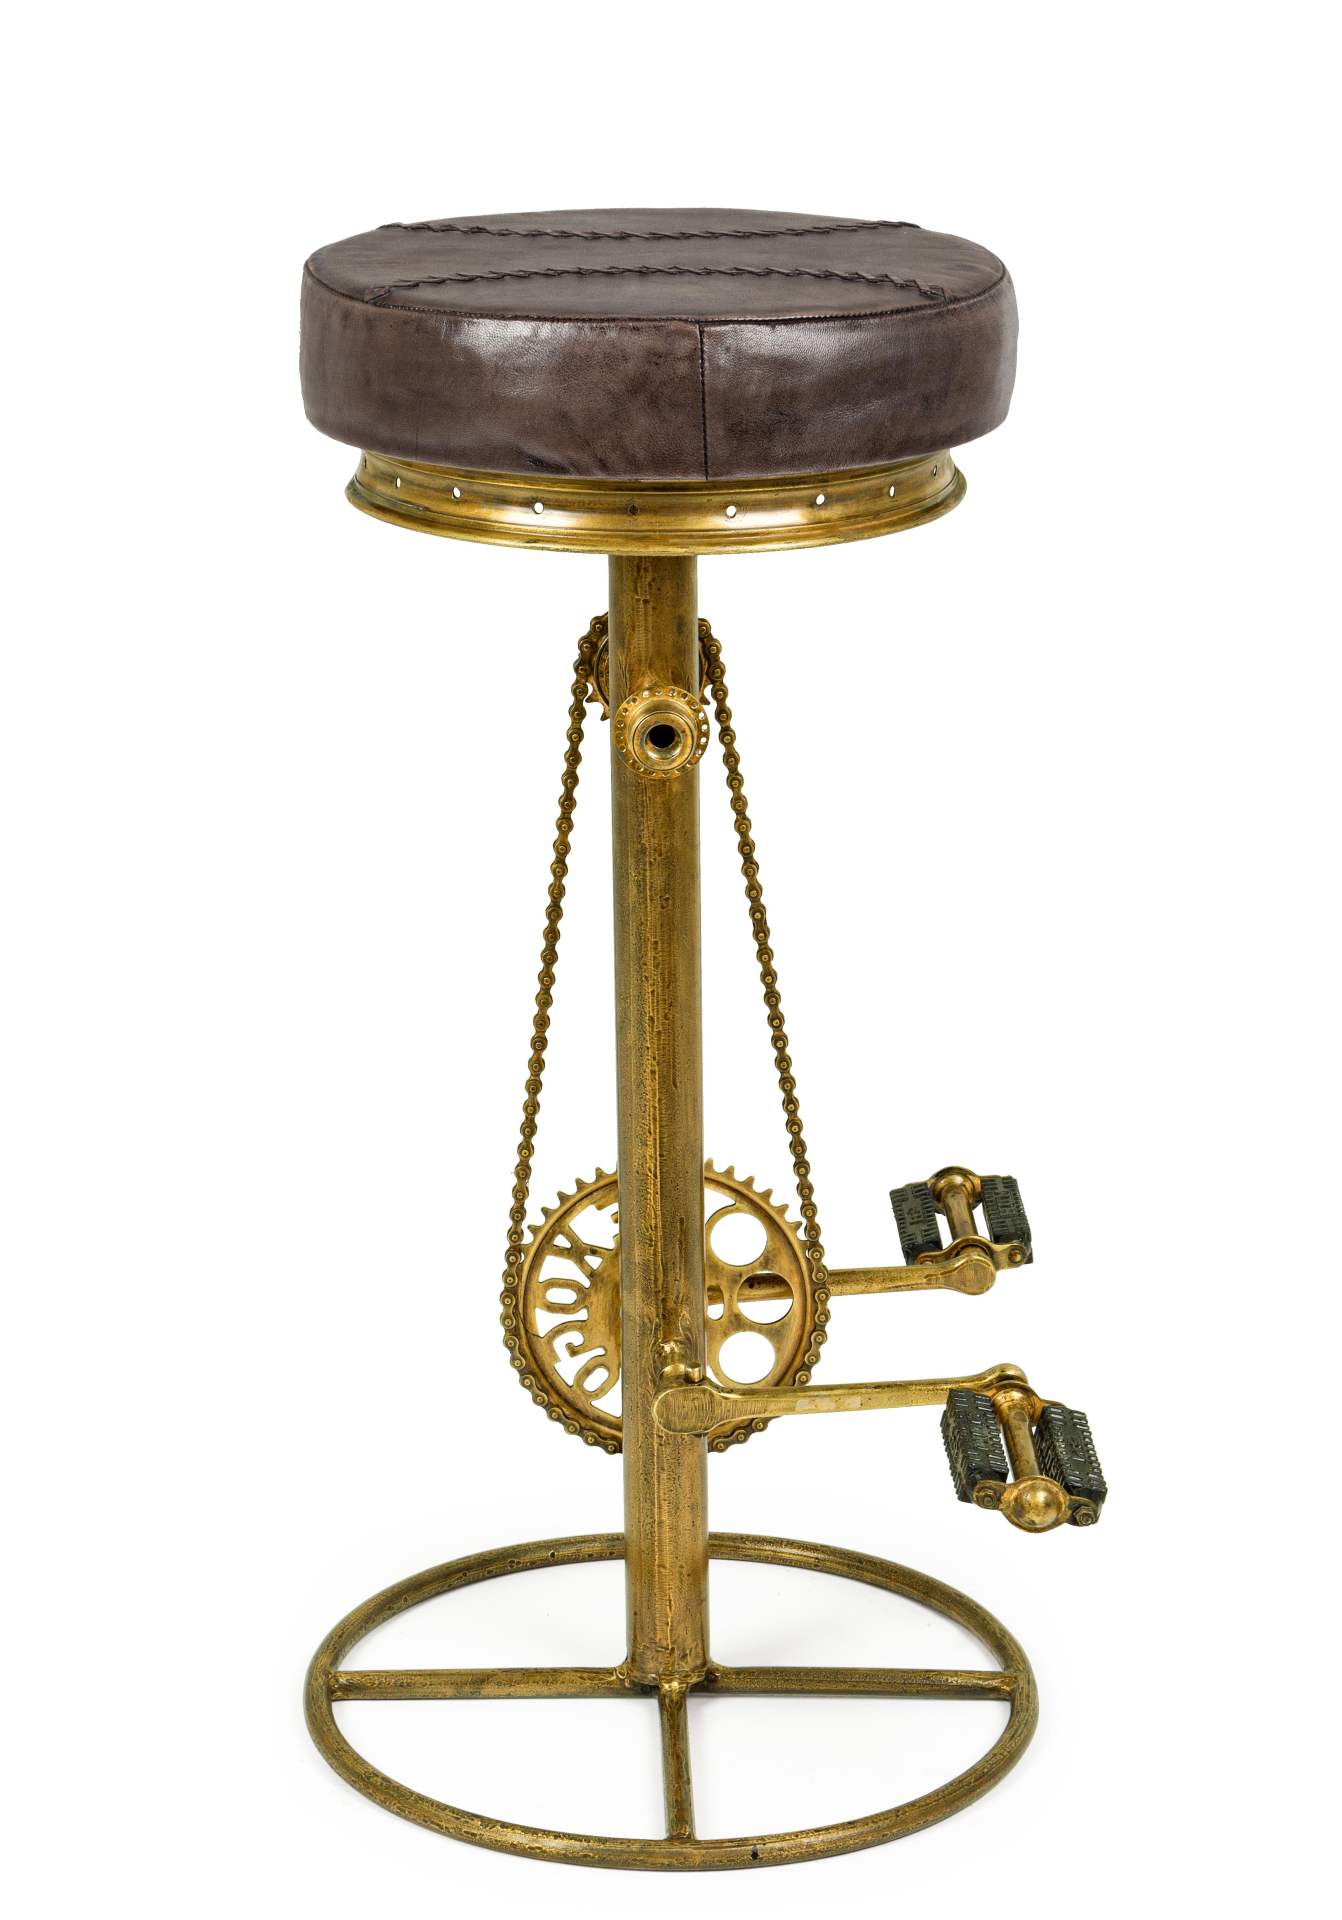 Der Barhocker Cycle überzeugt mit seinem industriellem Design. Gefertigt wurde er aus Leder, welches einen braunen Farbton besitzt. Das Gestell ist aus Metall und hat eine goldenen Farbe. Die Sitzhöhe des Hockers beträgt 80 cm.